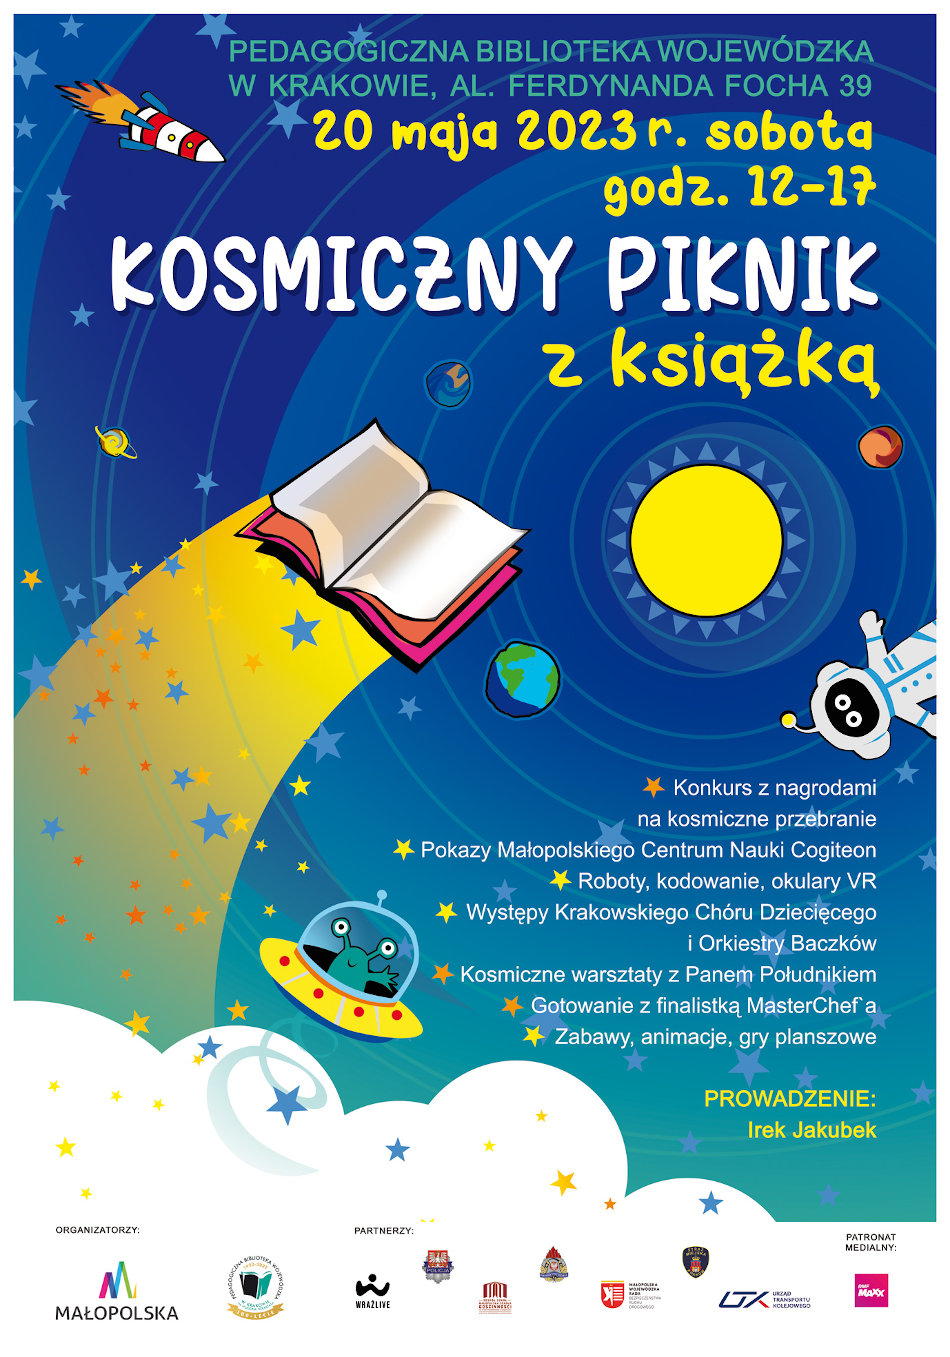 Oficjalne zaproszenie na Kosmiczny Piknik z książką na dziedzińcu PBW w Krakowie. W tle kolorowy Układ Słoneczny, otwarta książka oraz astronauta.